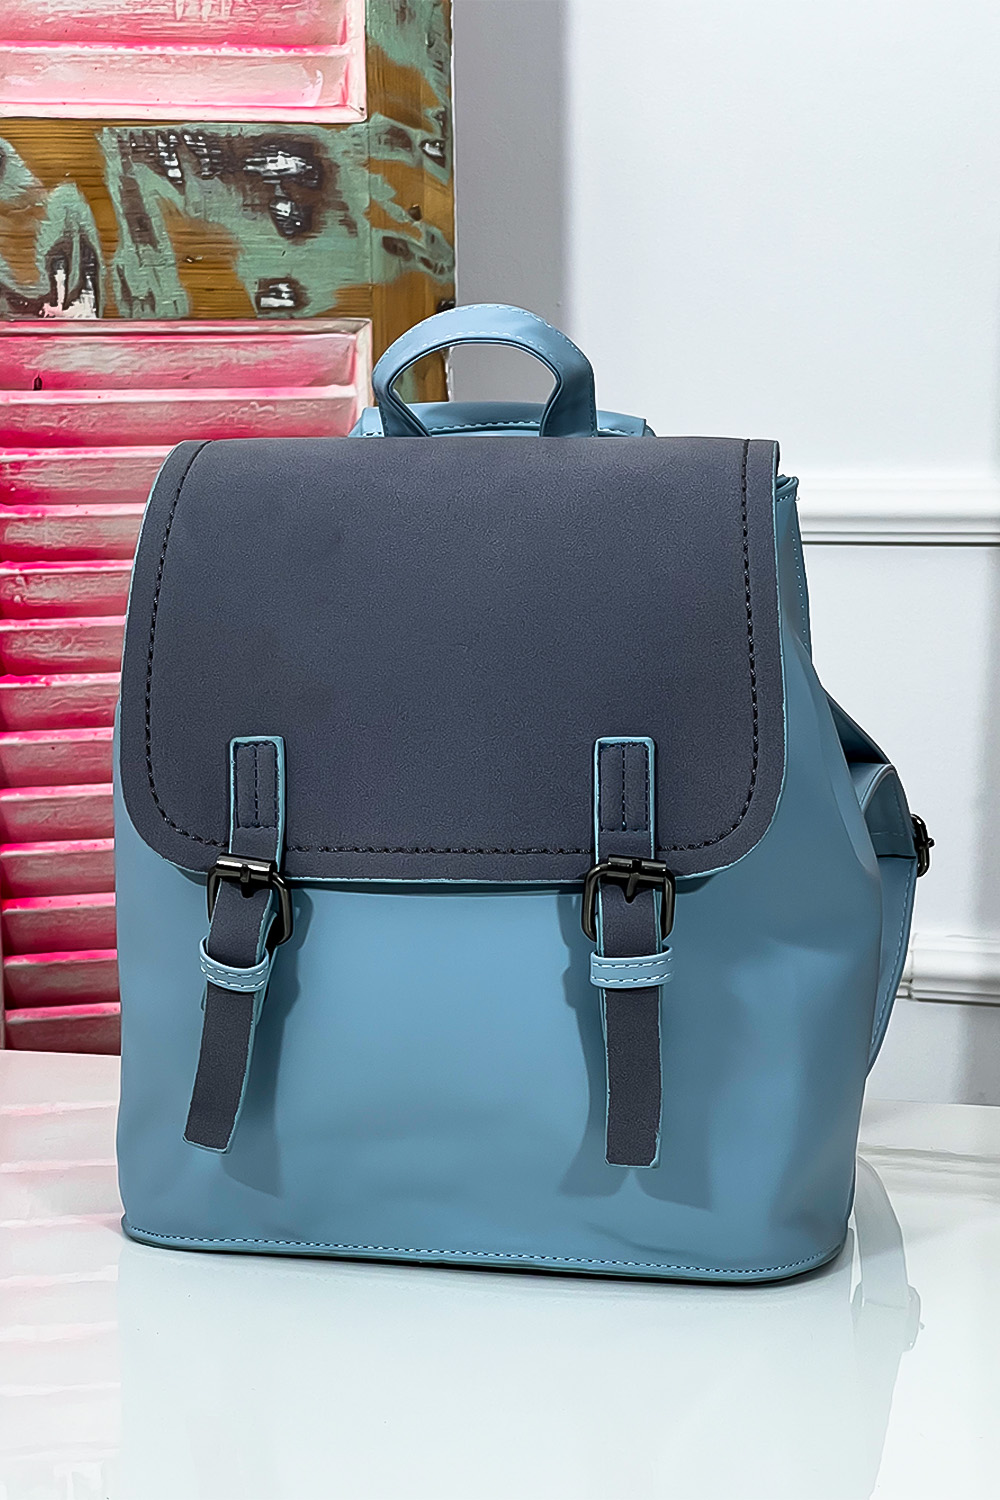 Γαλάζιο backpack με suede λεπτομέρεια